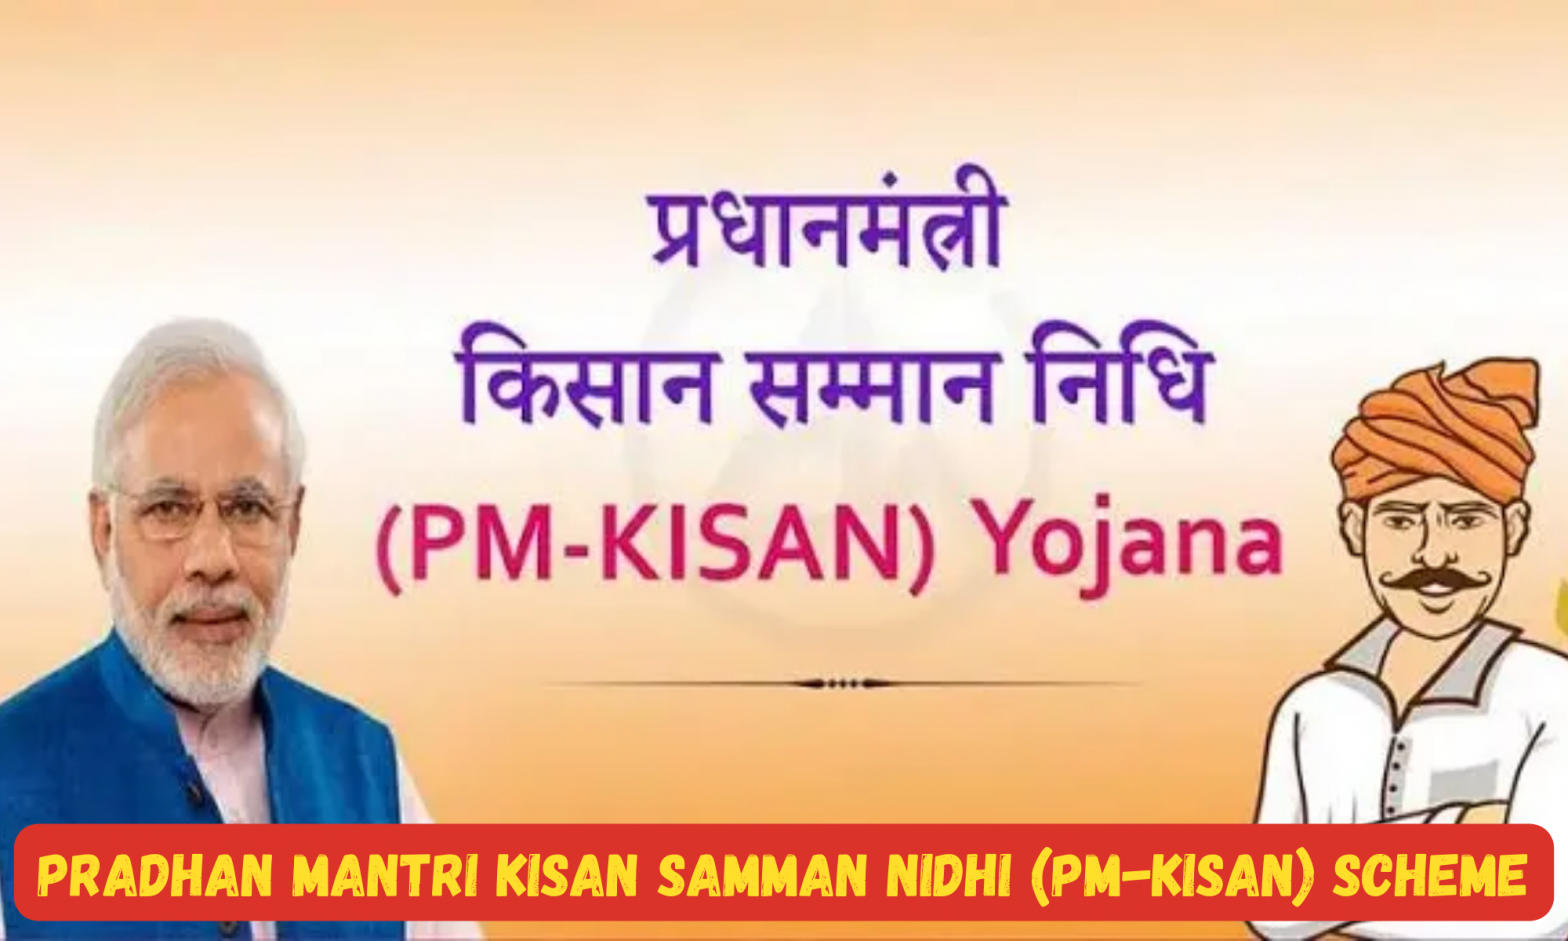 Pradhan Mantri Kisan Samman Nidhi (PM-Kisan) scheme